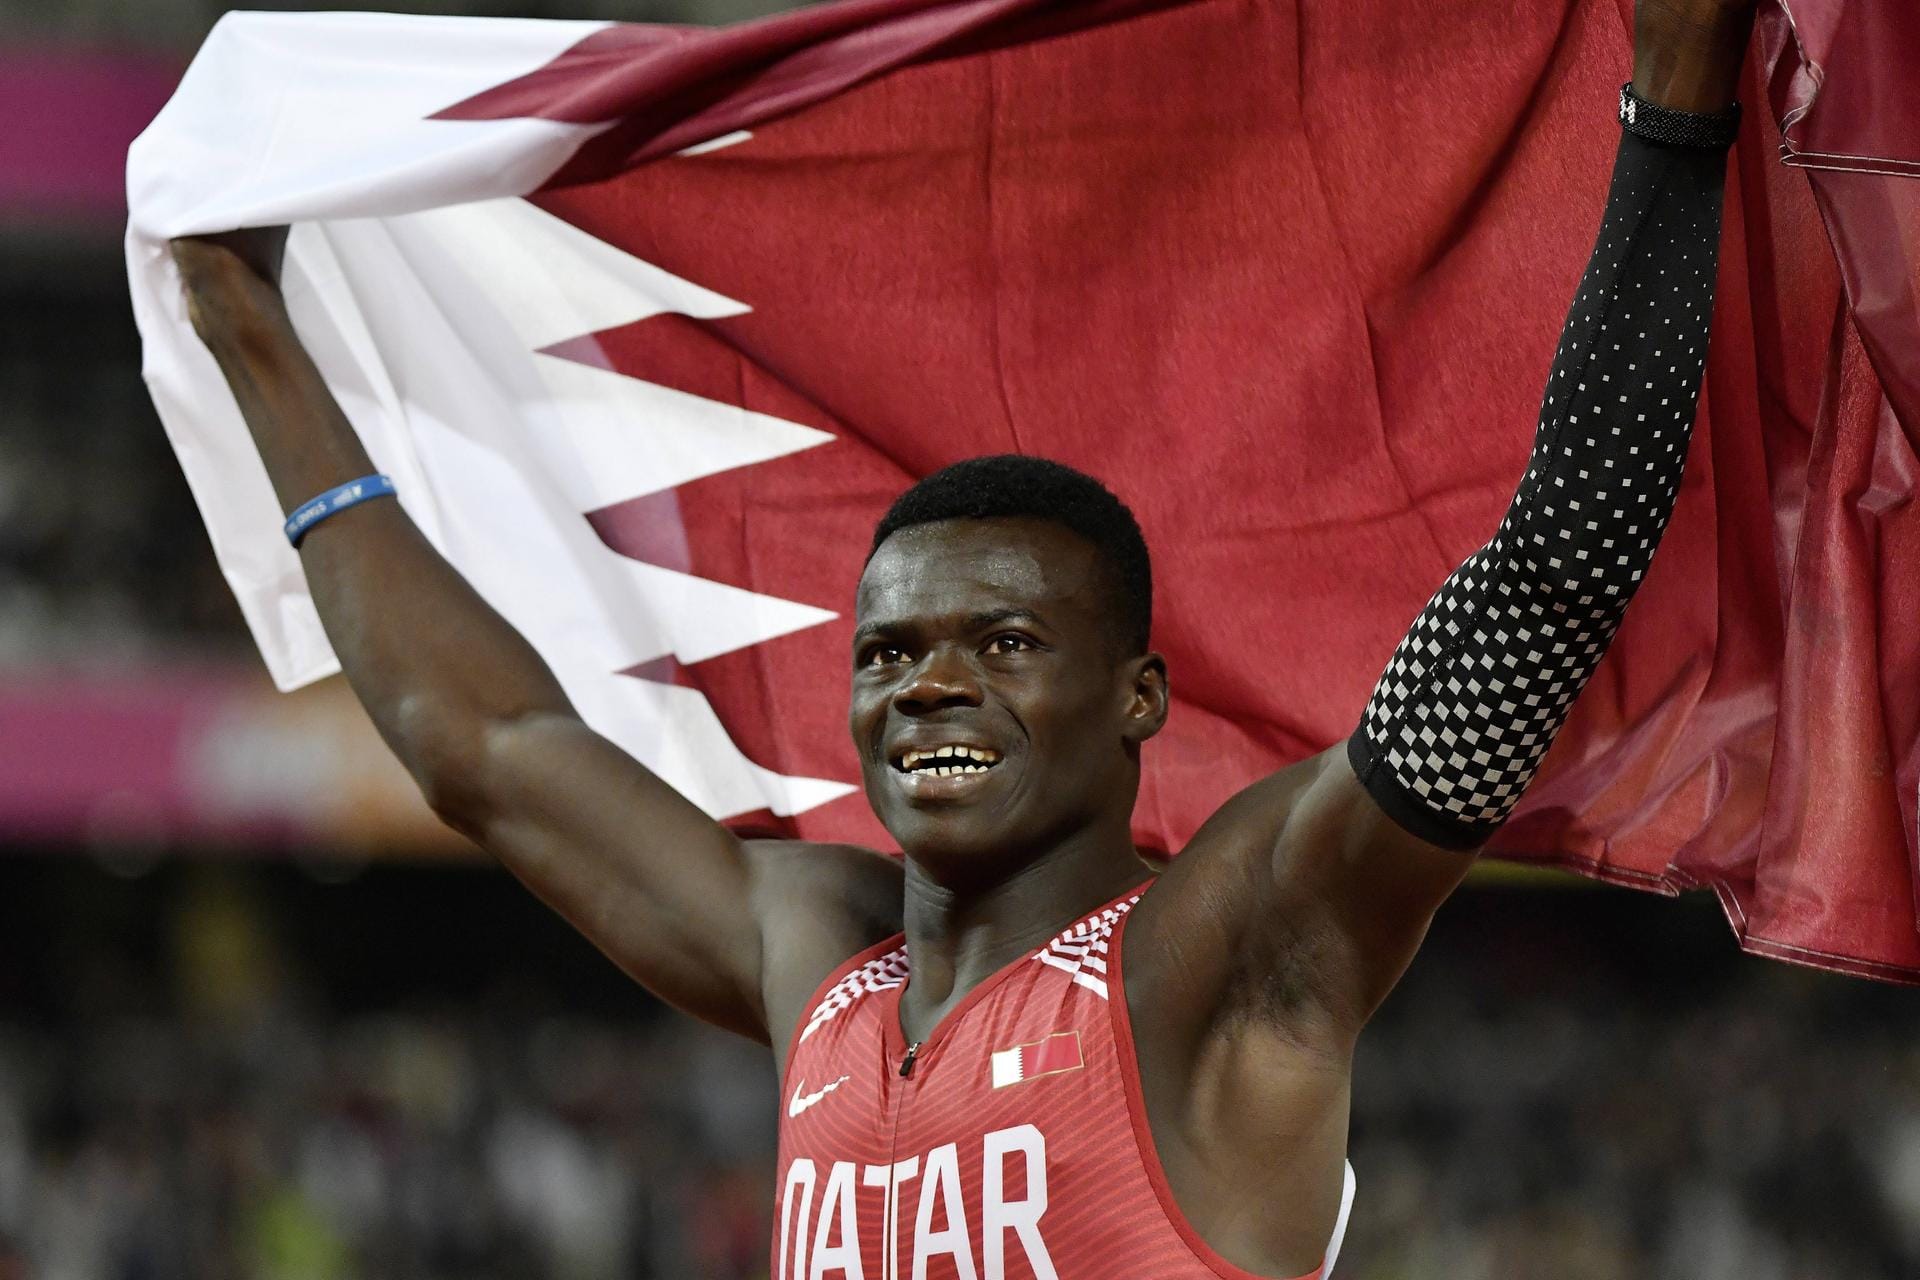 26. Juni: Der katarische 400-m-Weltklasseläufer Abdalelah Haroun kommt bei einem Verkehrsunfall ums Leben. Der WM-Dritte von 2017 wird nur 24 Jahre alt.